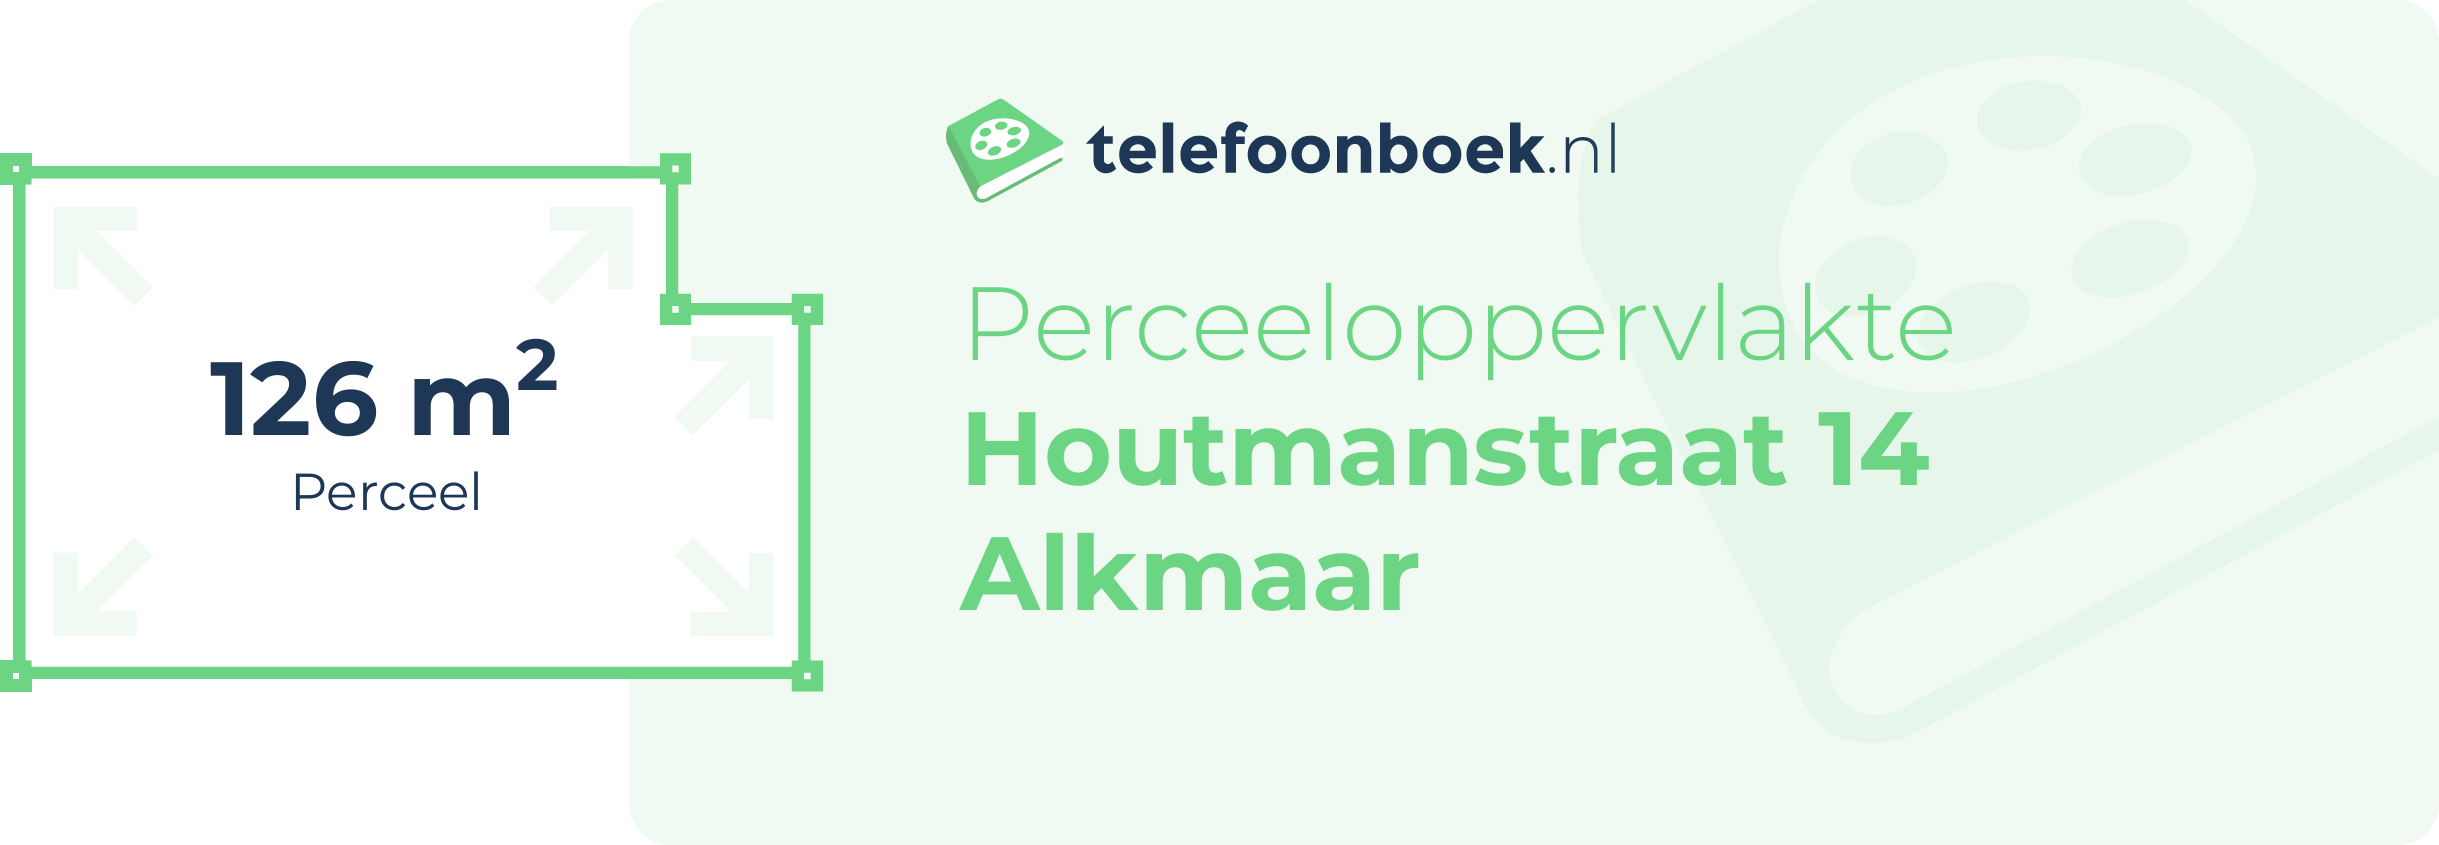 Perceeloppervlakte Houtmanstraat 14 Alkmaar